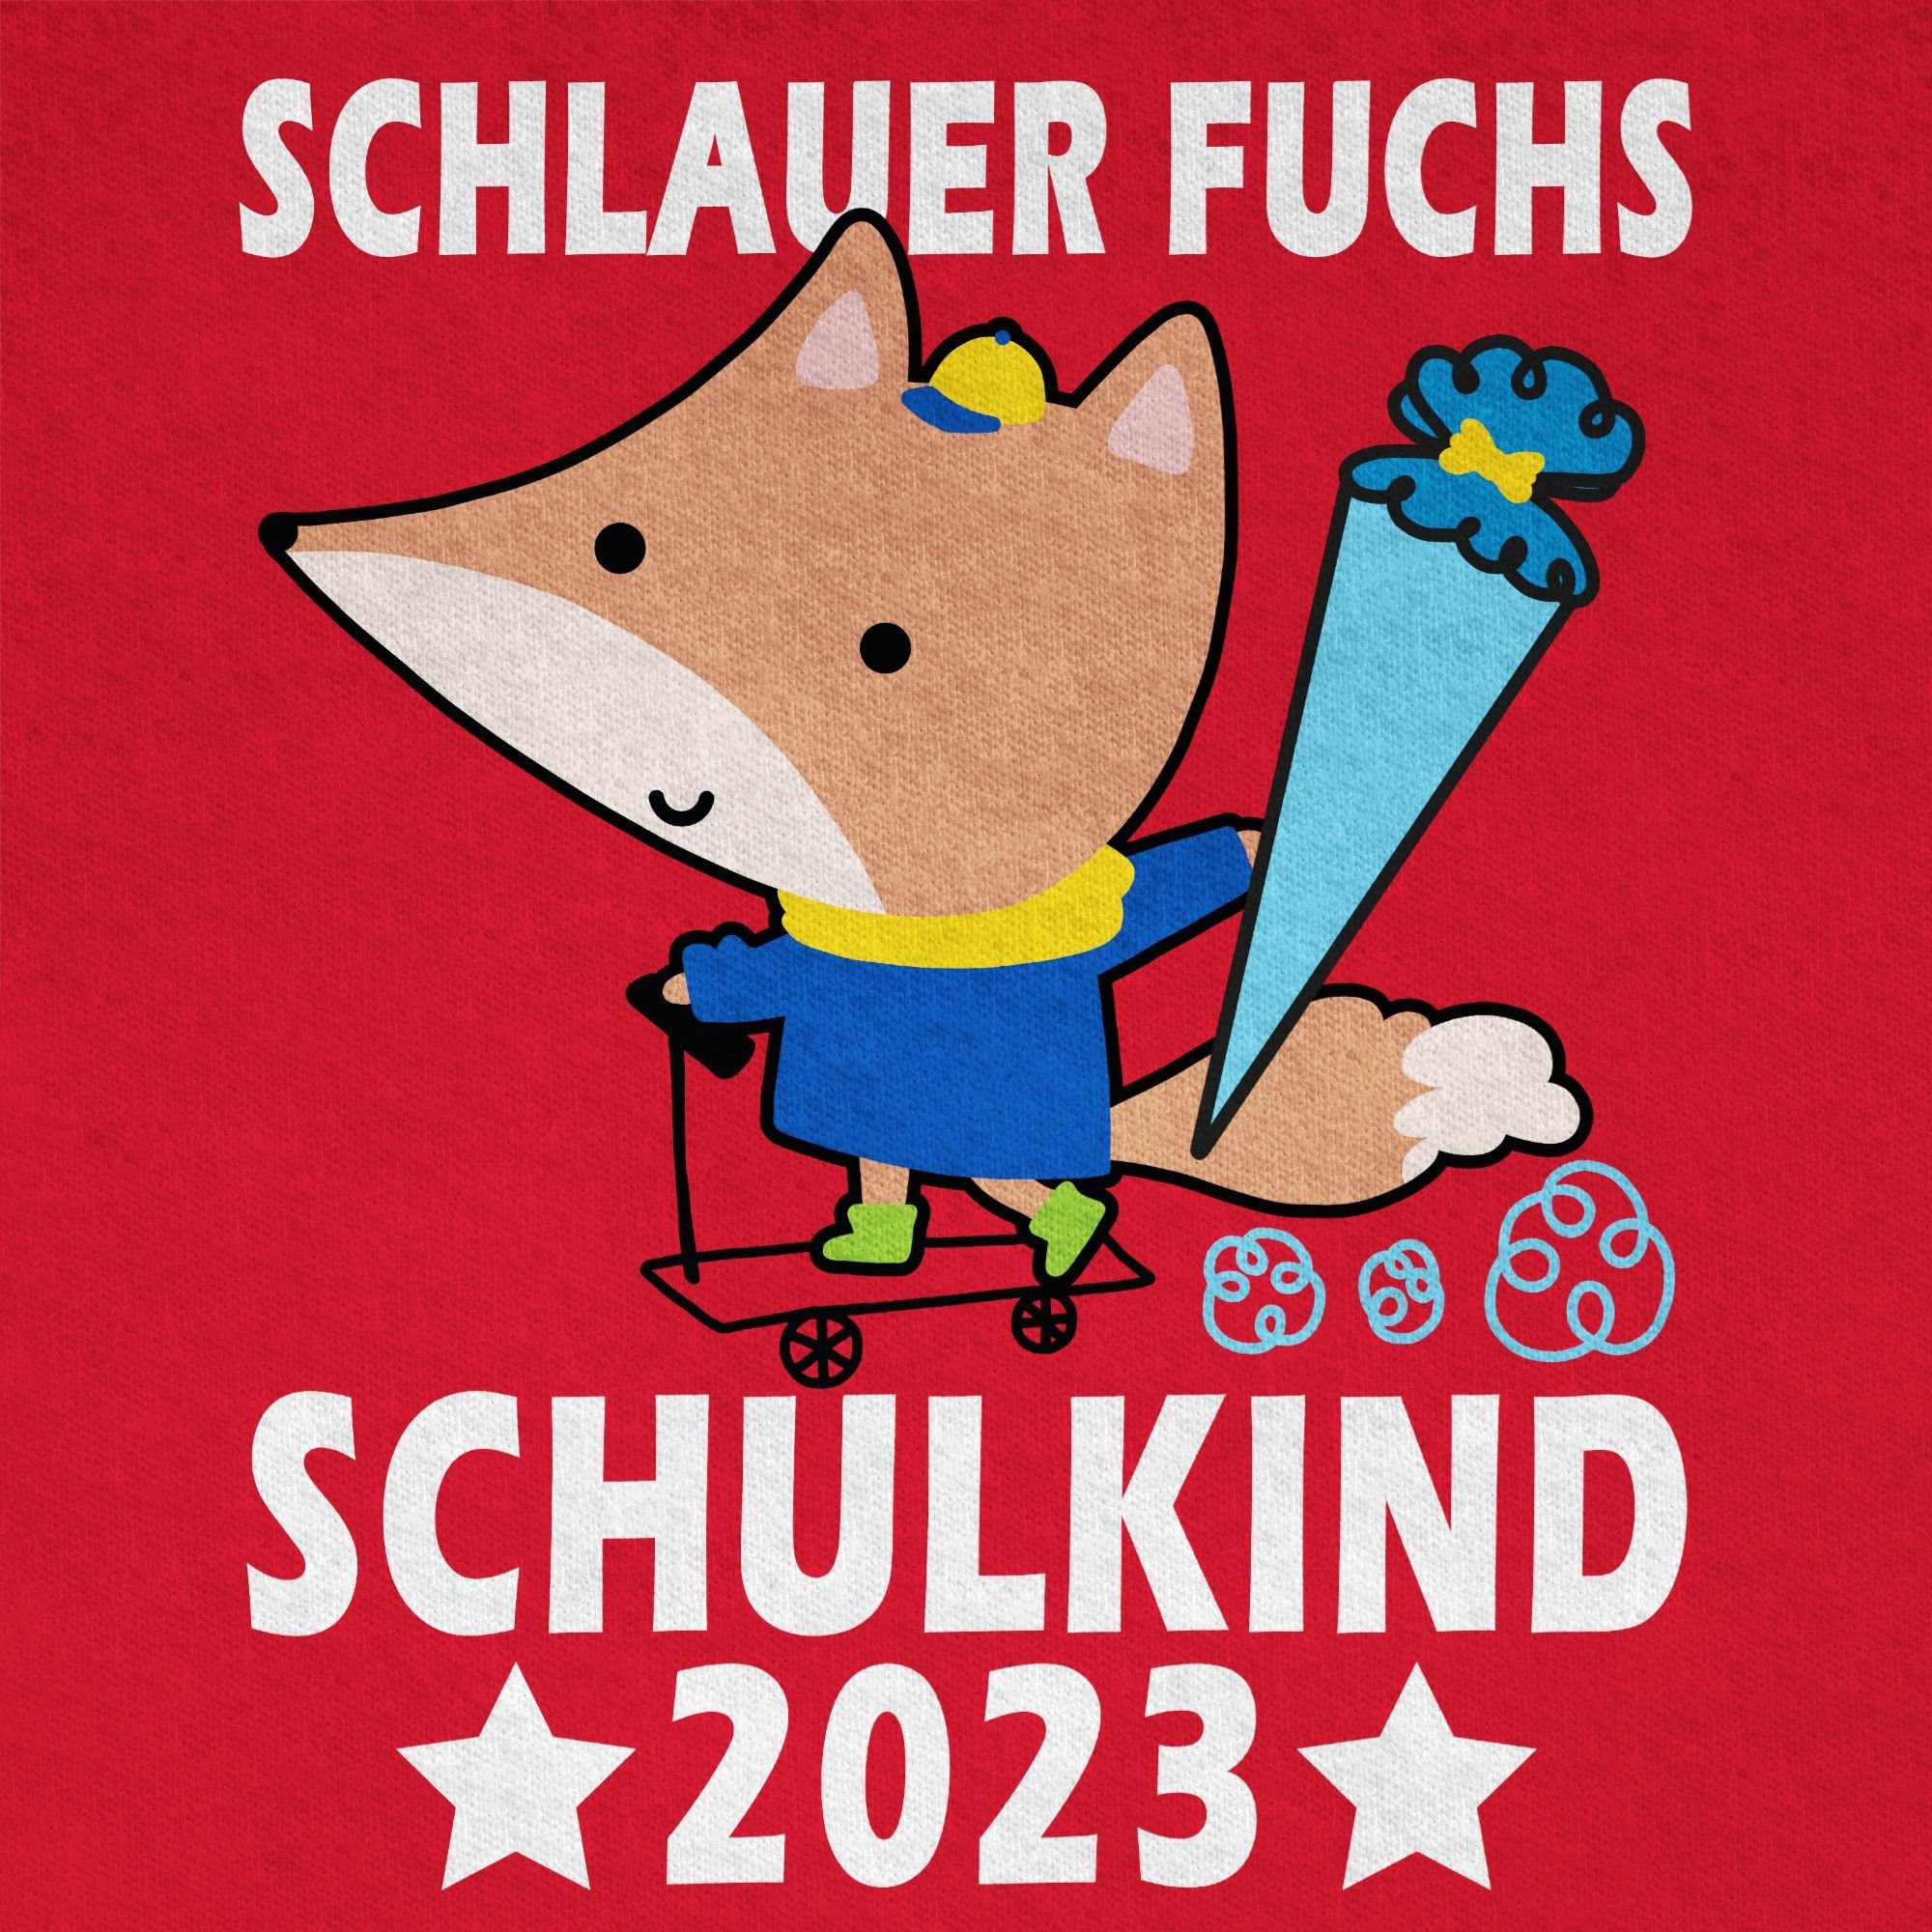 2023 Schulkind Geschenke 03 Junge Shirtracer T-Shirt Schulanfang Einschulung Schlauer Fuchs Rot